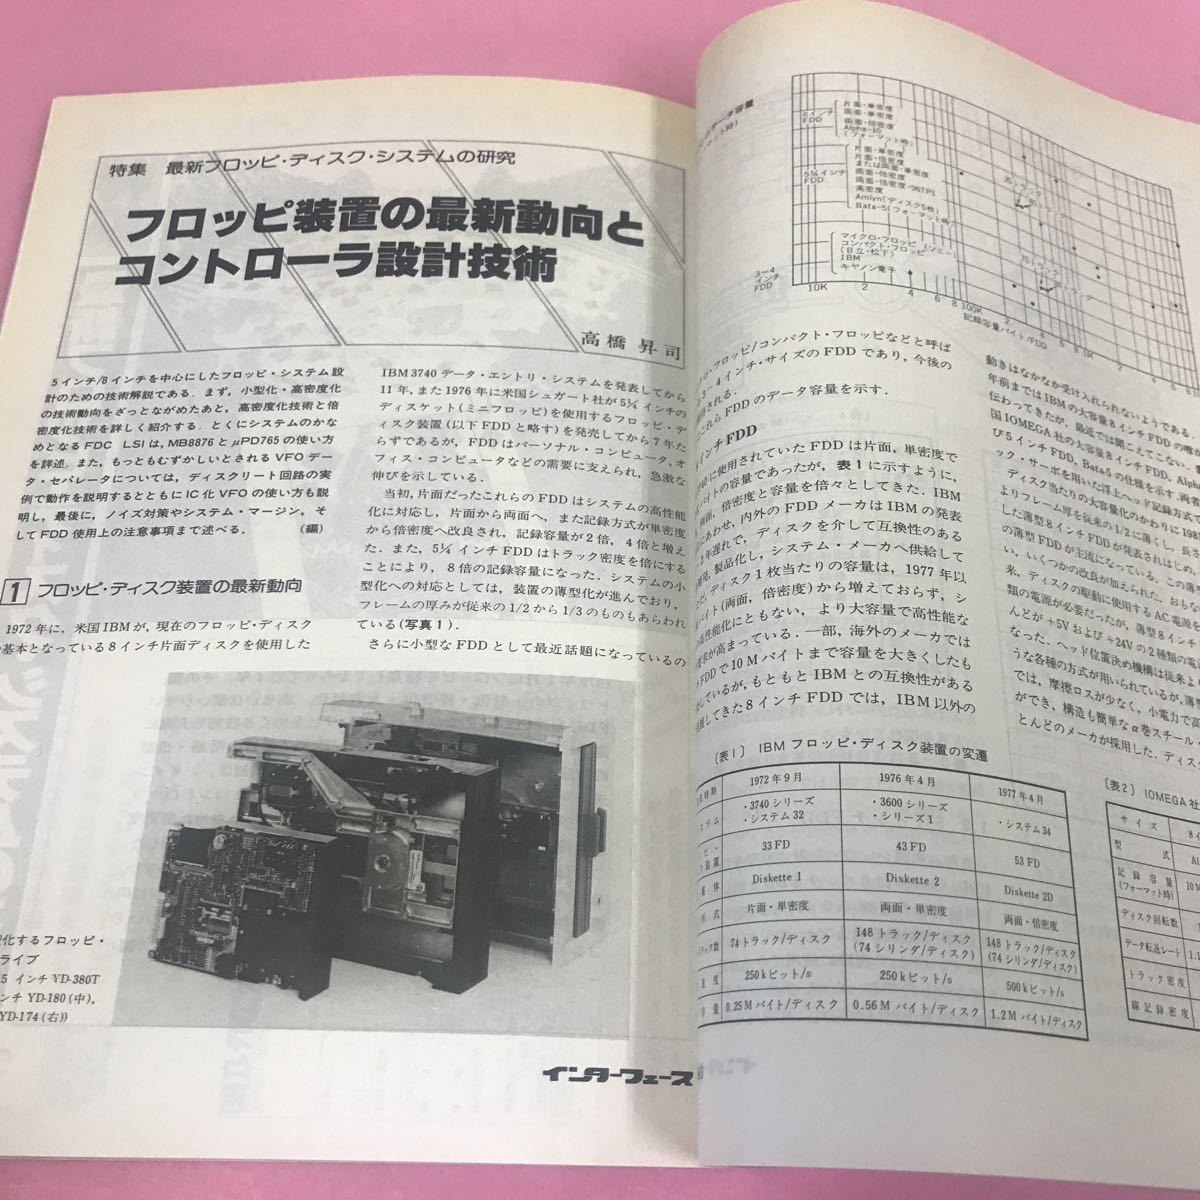 A04-078 インターフェース 1983年5月号 最新フロッピ・ディスク・システムの研究 PDP-11を1チップ化したMICRO/J-11 付録なし_画像3